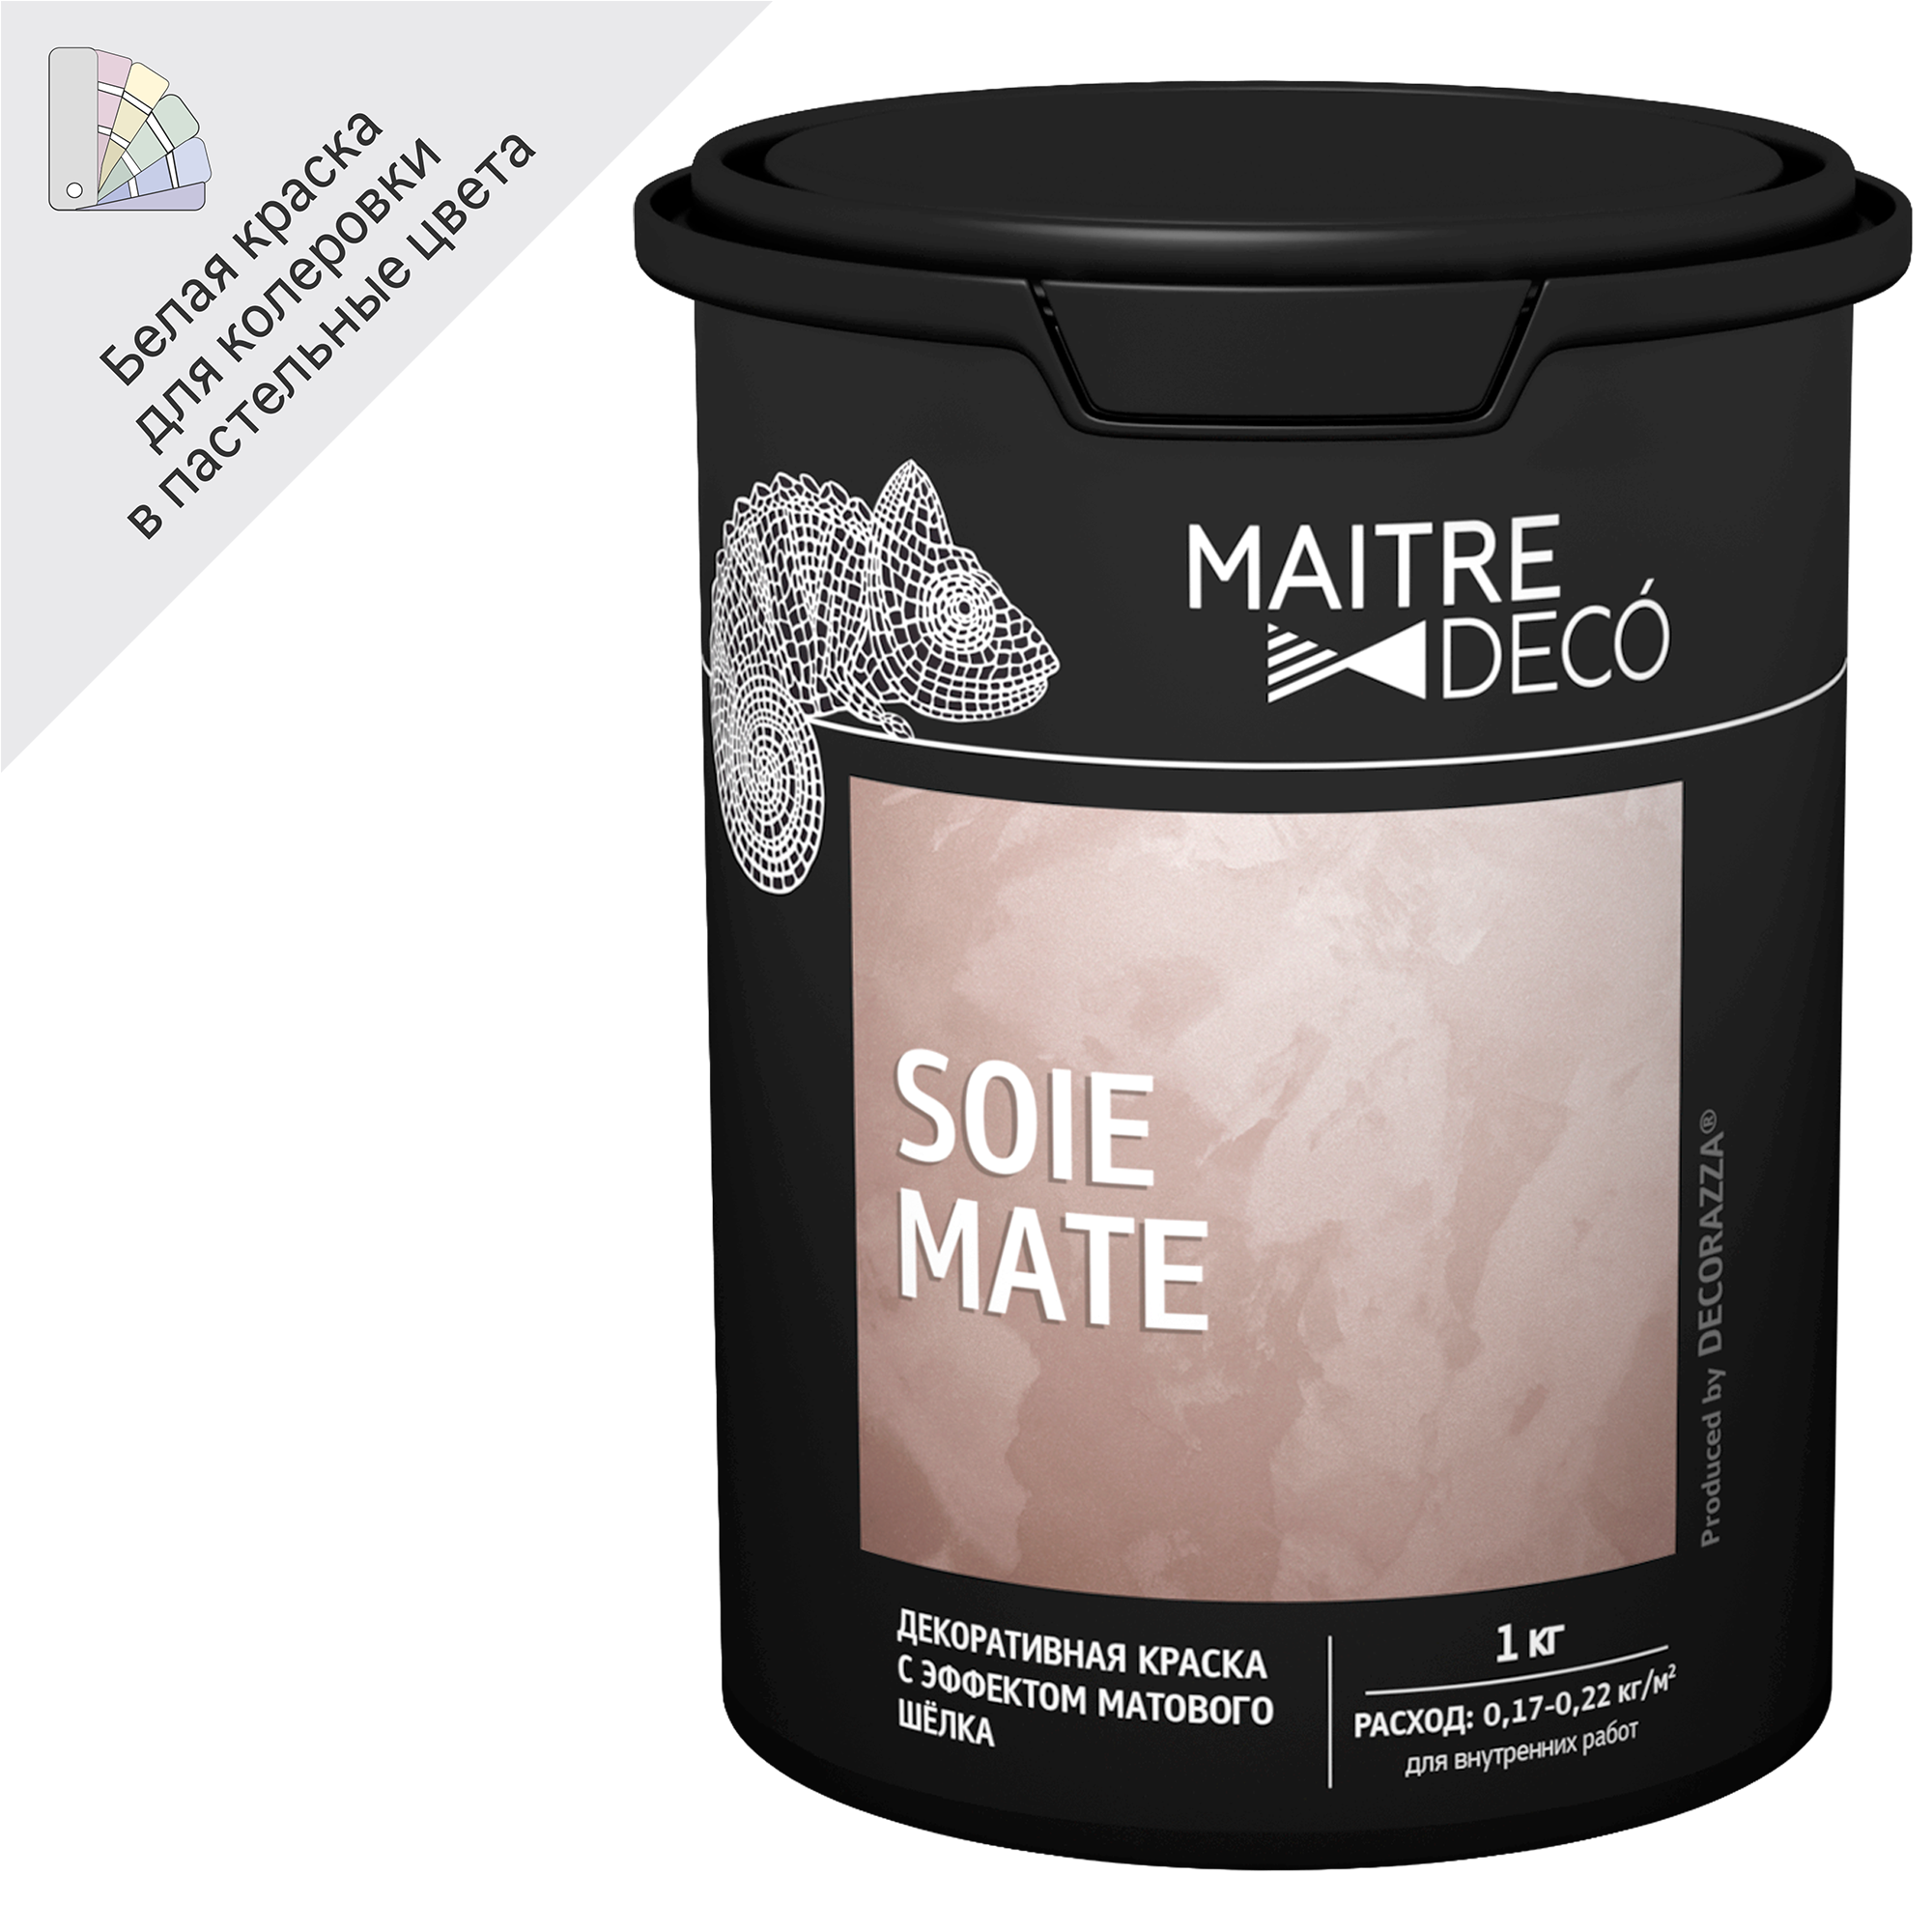 89149808 Краска декоративная Soie Mate 1 кг цвет белый STLM-0079136 MAITRE DECO